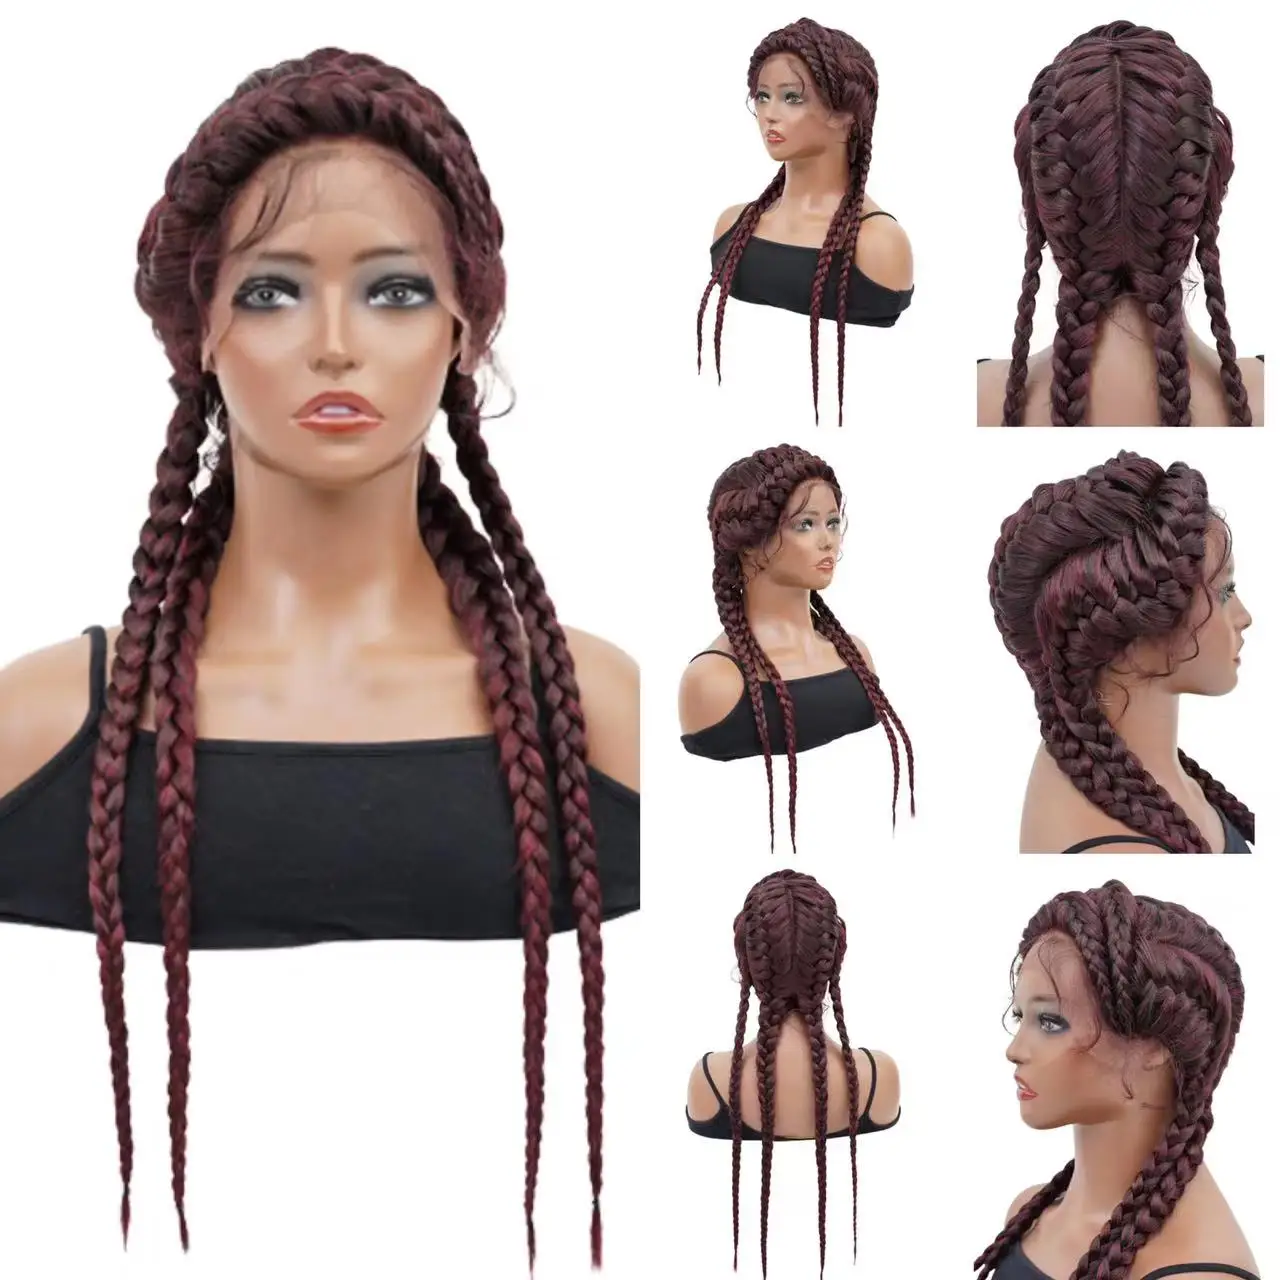 

Perruques Lace Front Synthetiques Avec Des Cheveux De Bebe 4 Braid Wigs For Women Cornrow Braids Lace Wigs